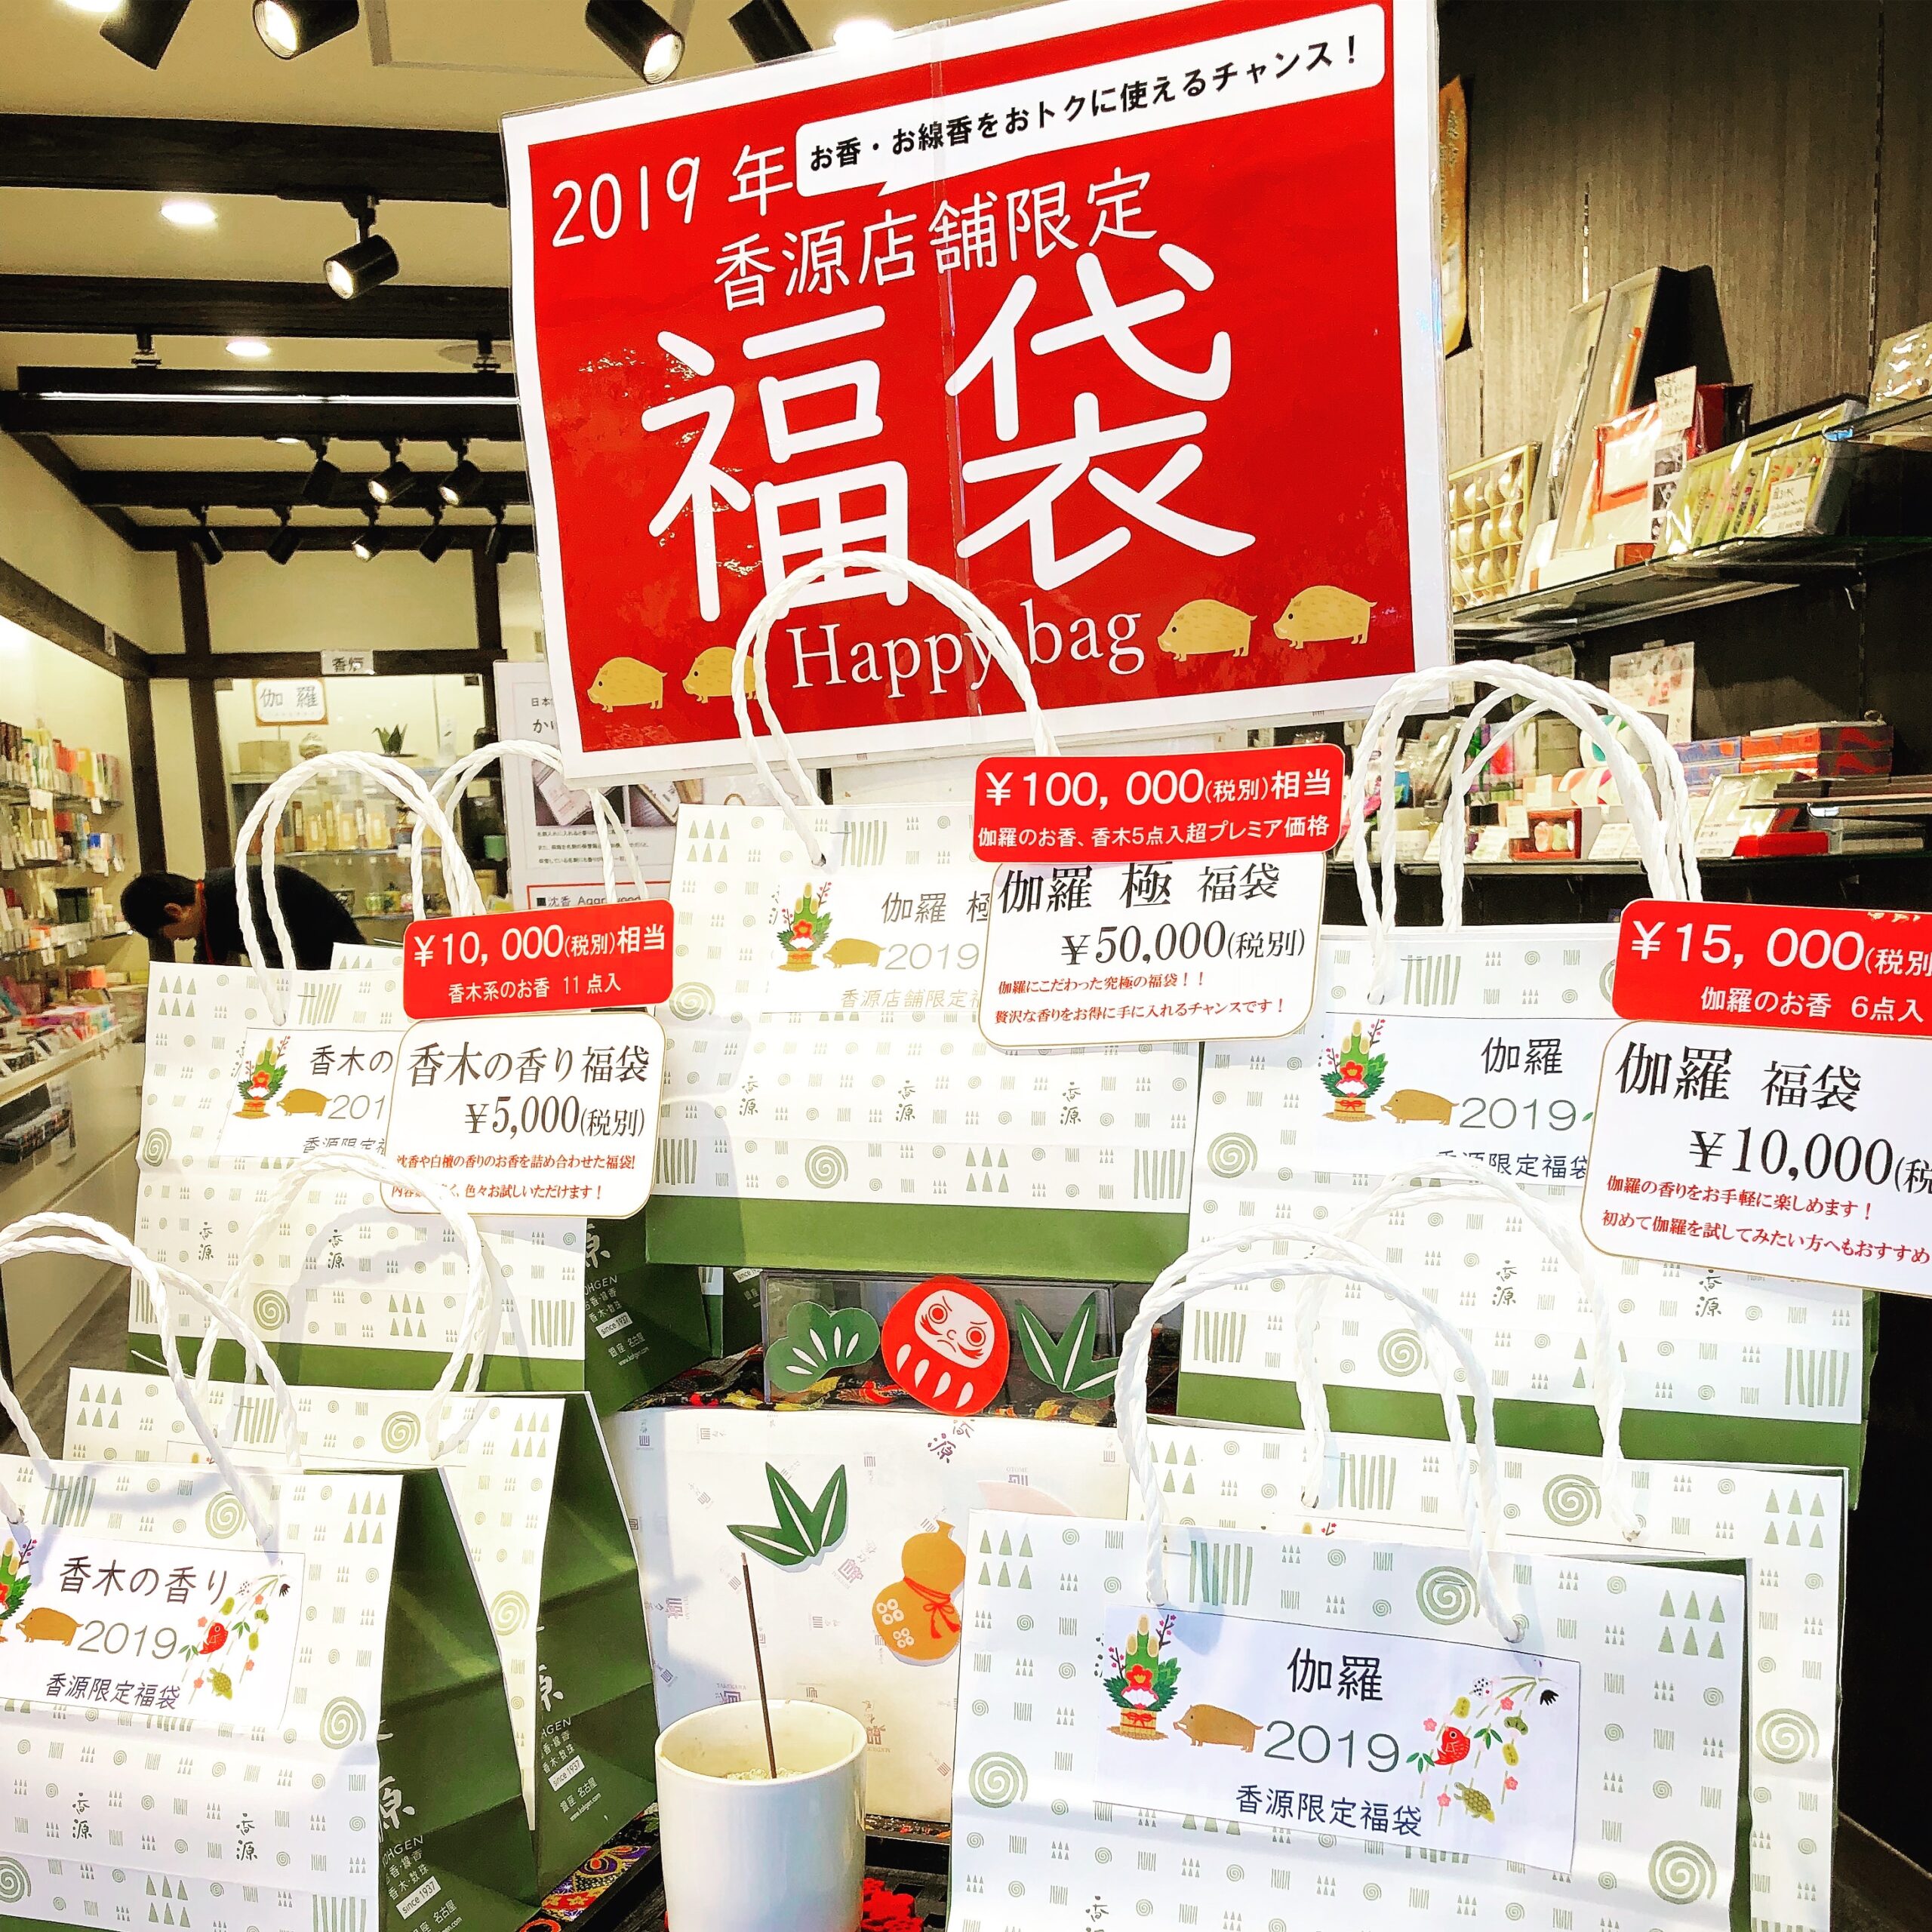 【香源 上野桜木店】今年は上野桜木店がオープンし1年を迎えます。本年もよろしくお願いいたします❗️